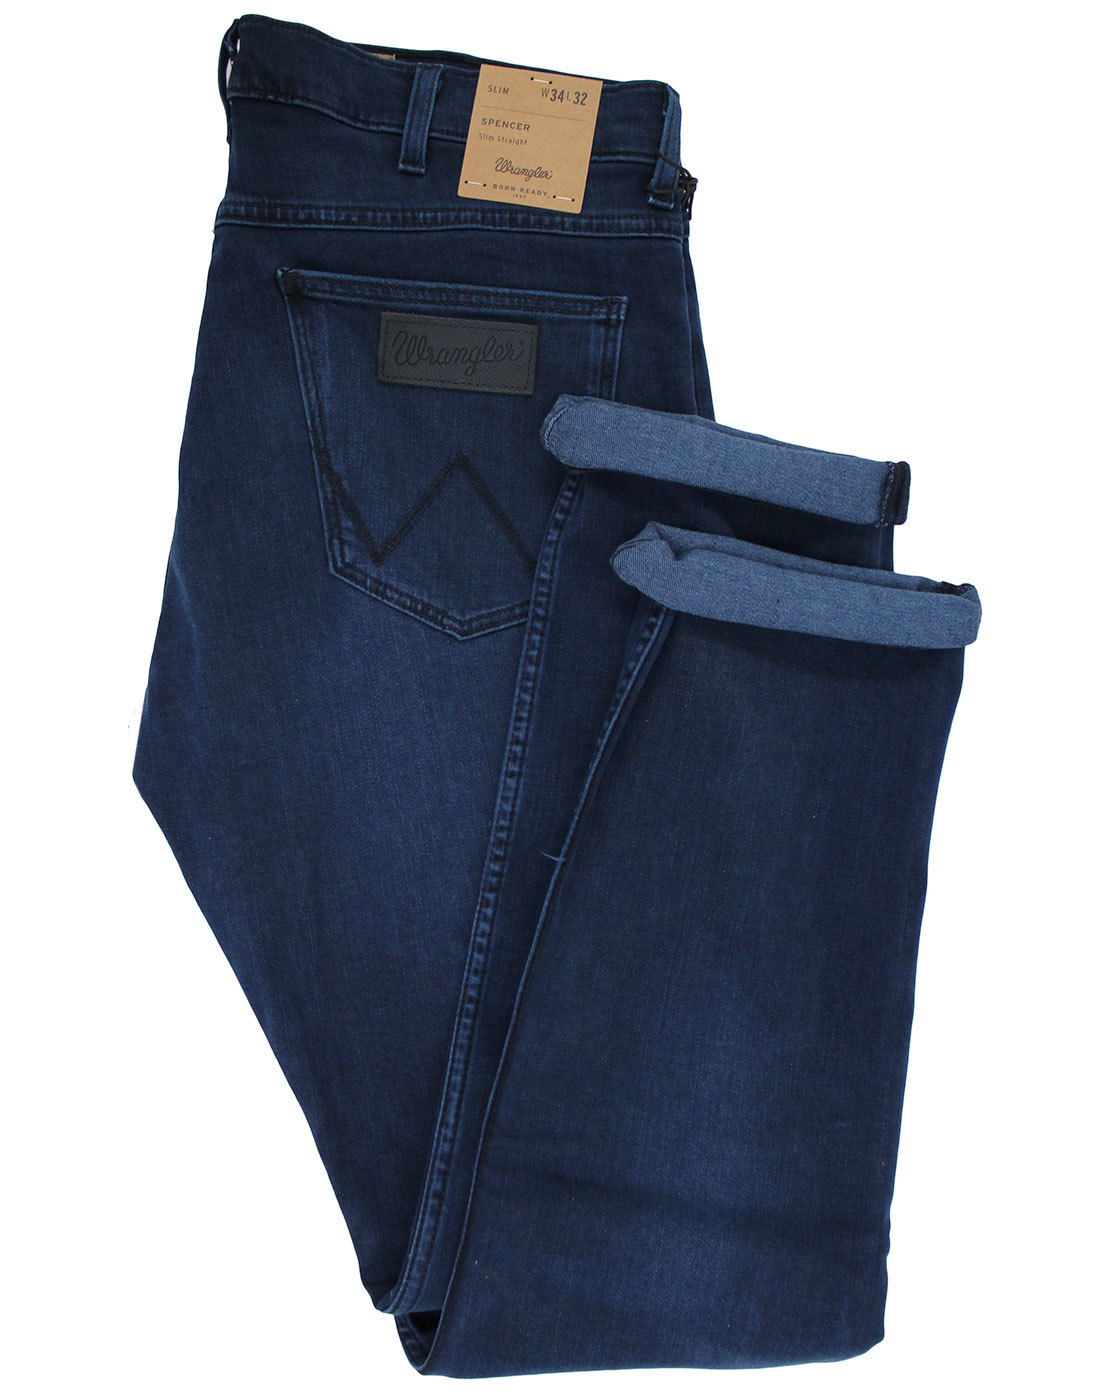 wrangler soft jeans